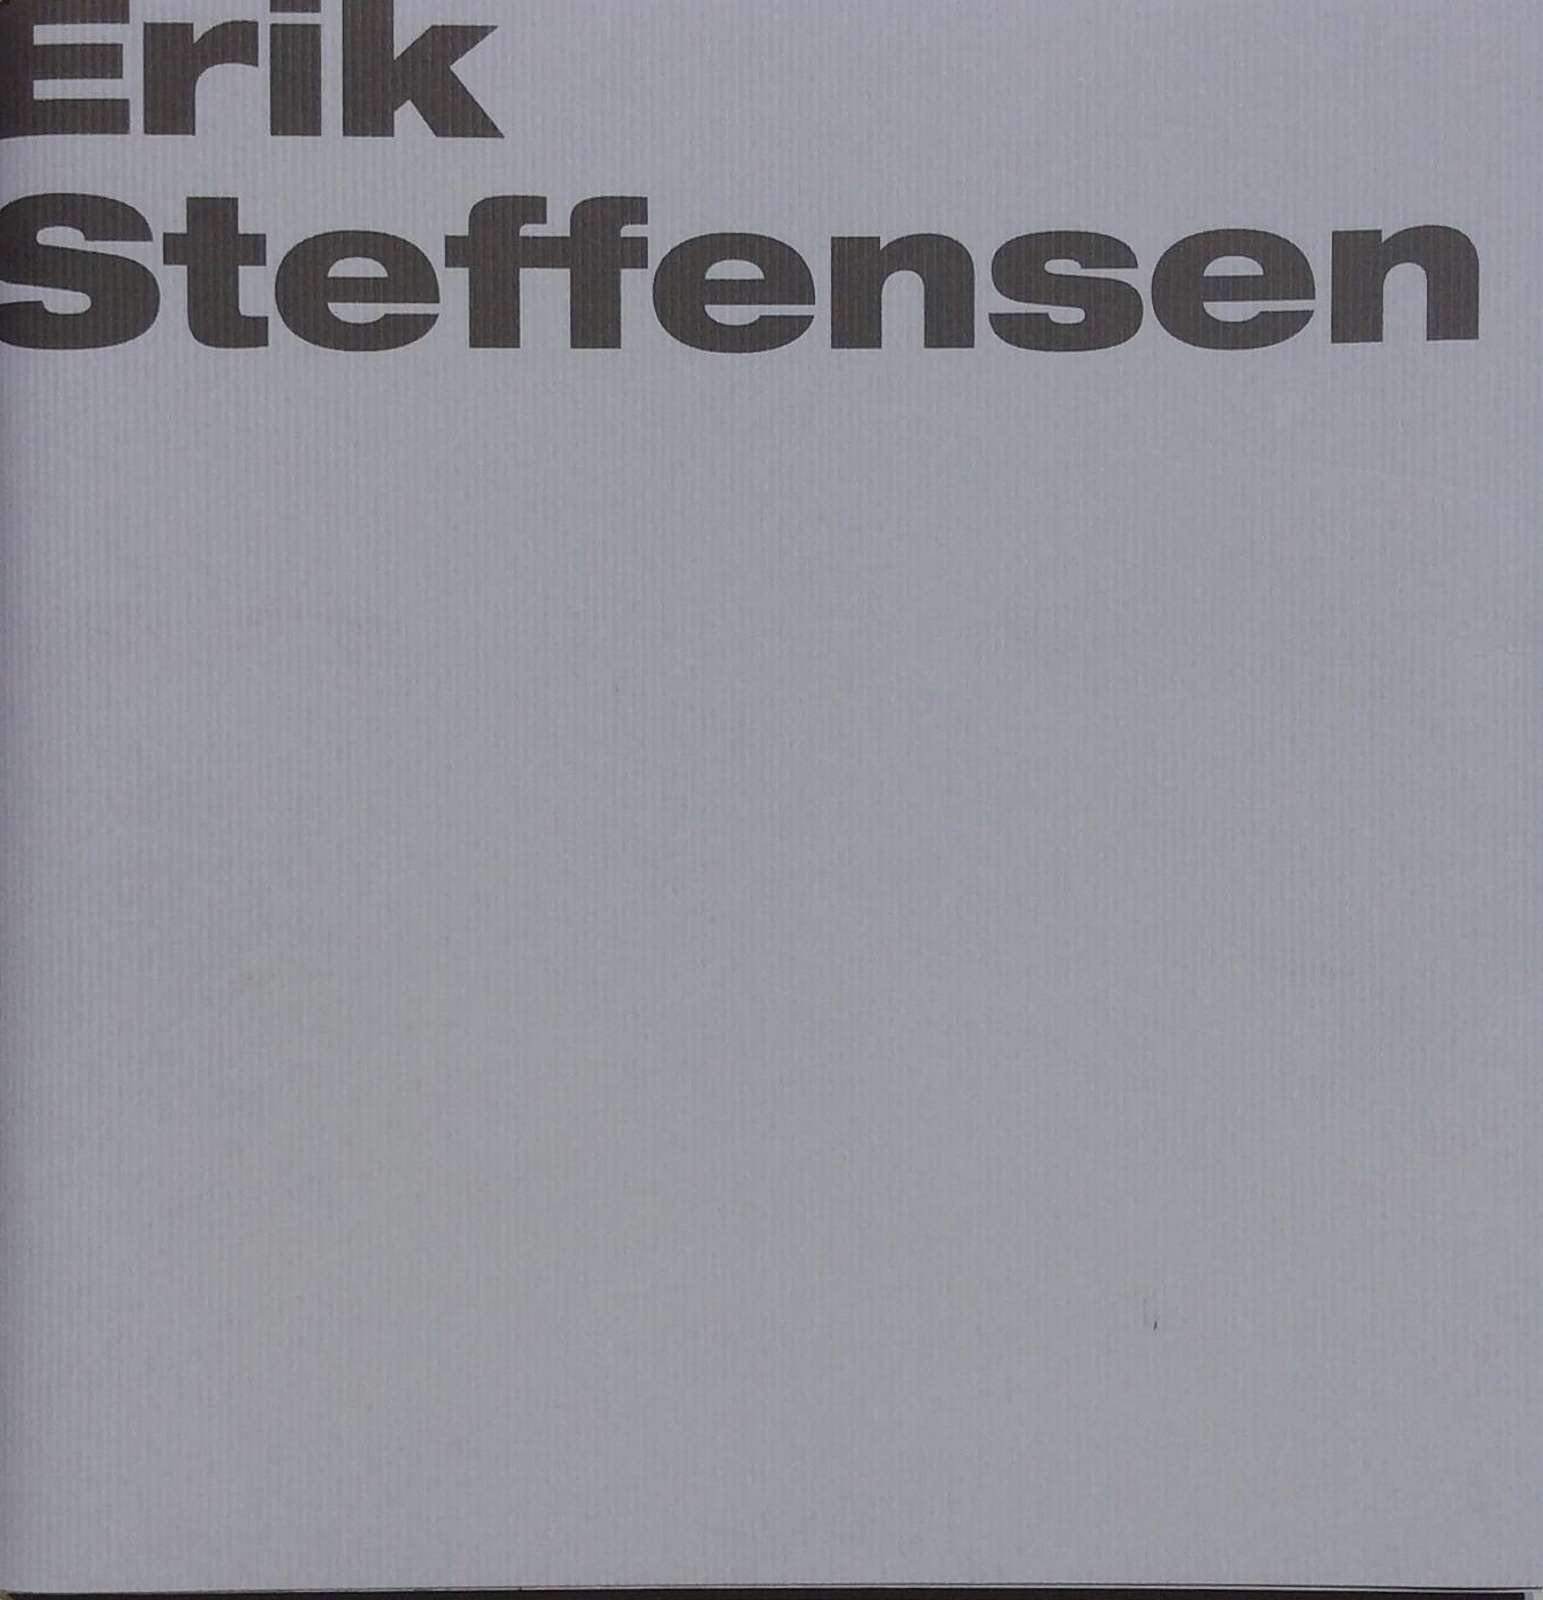 Bjerregaard, Galleri Bo. Erik Steffensen - New York, New York